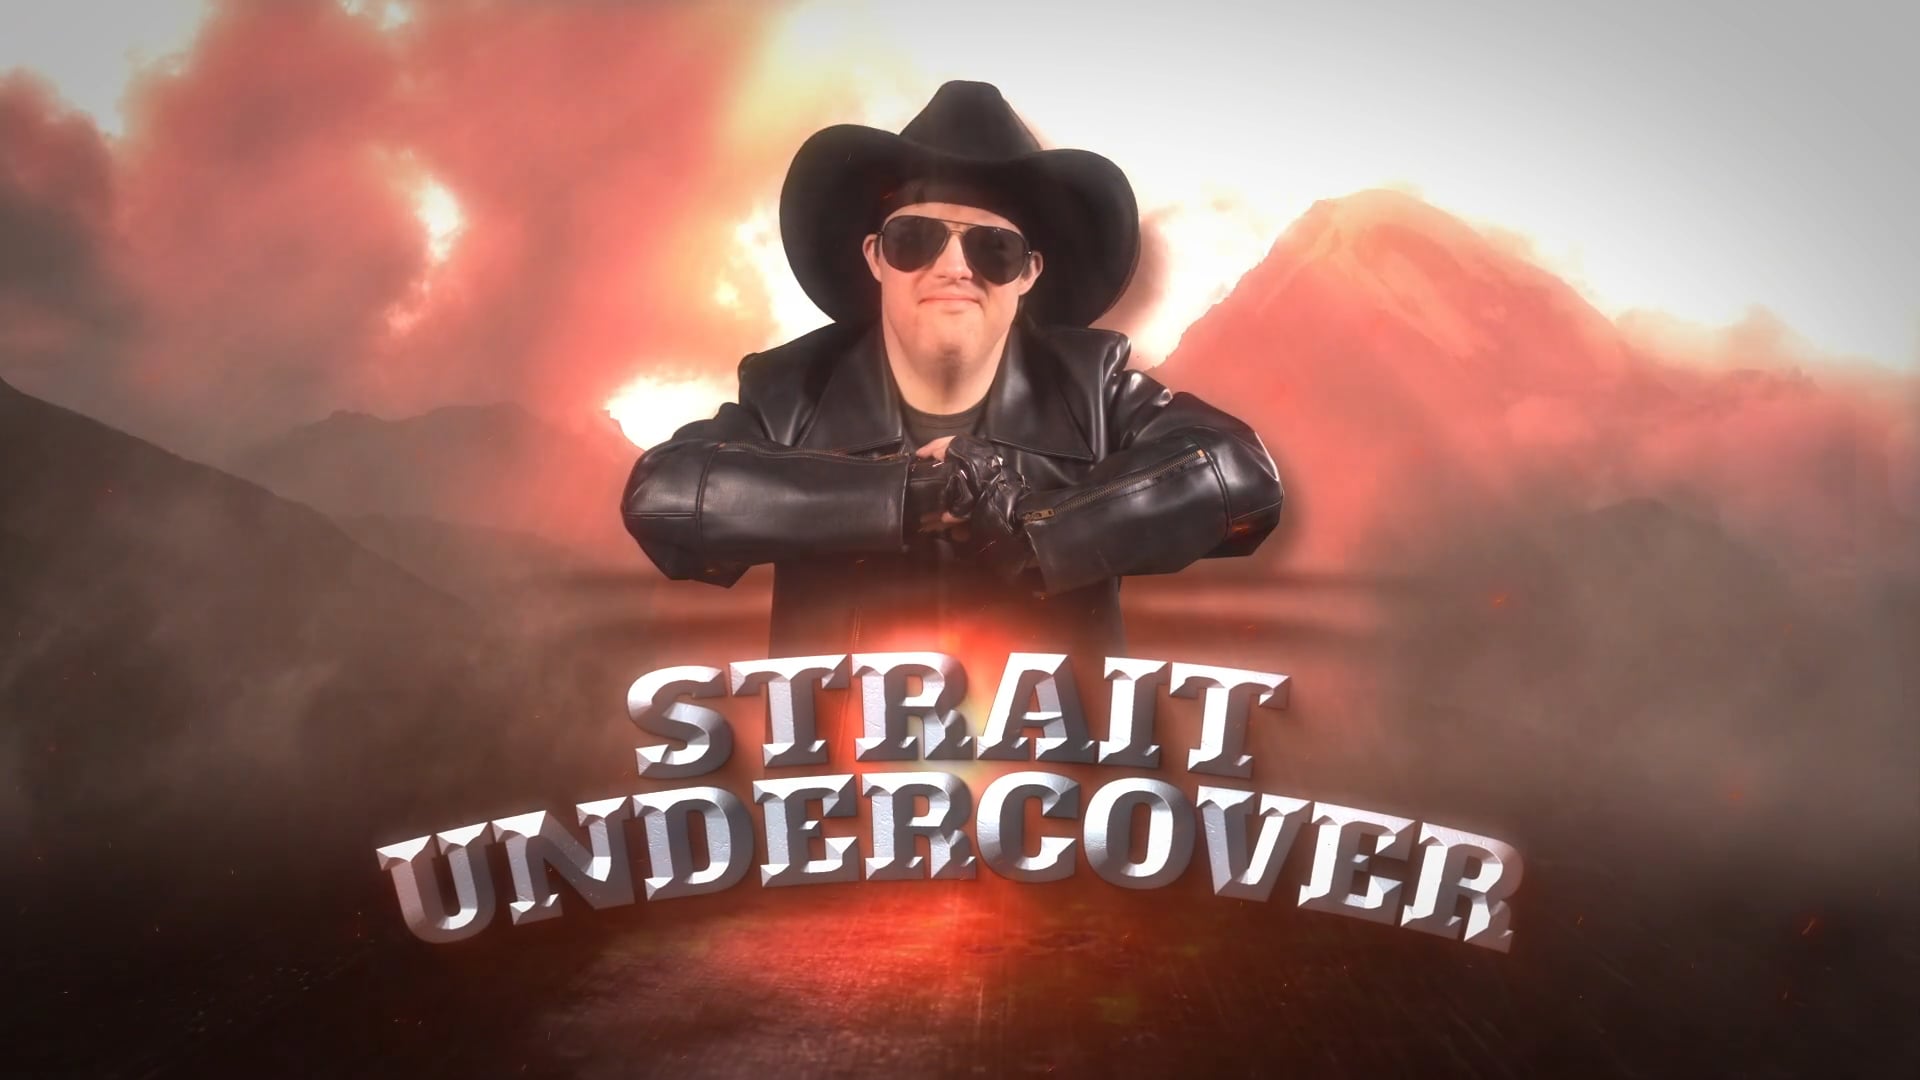 Strait Undercover Trailer